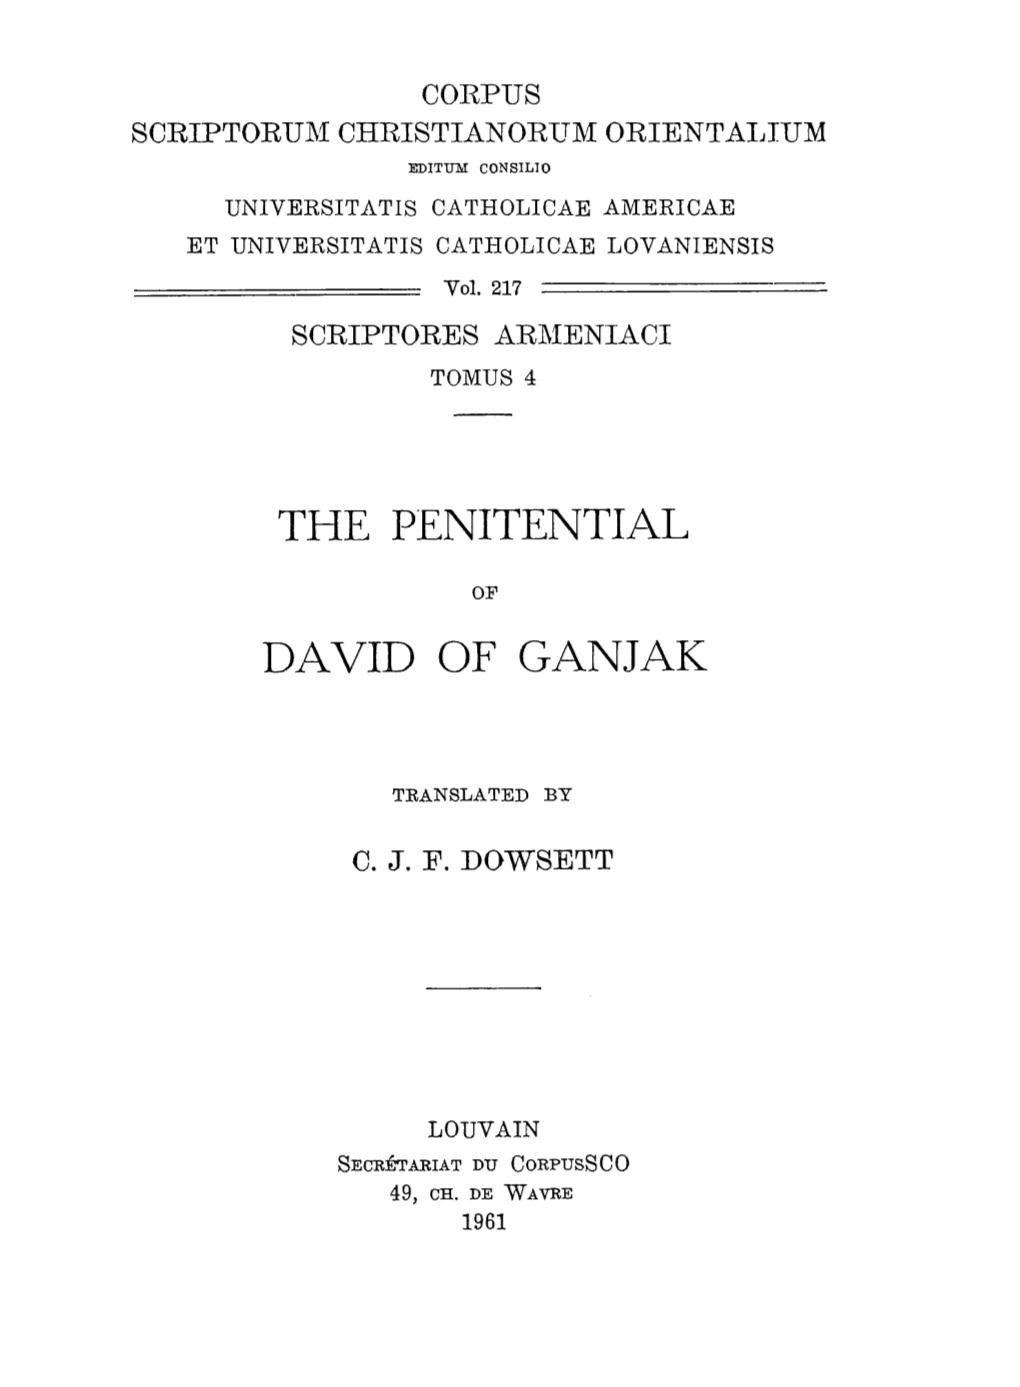 The Penitential David of Ganjak